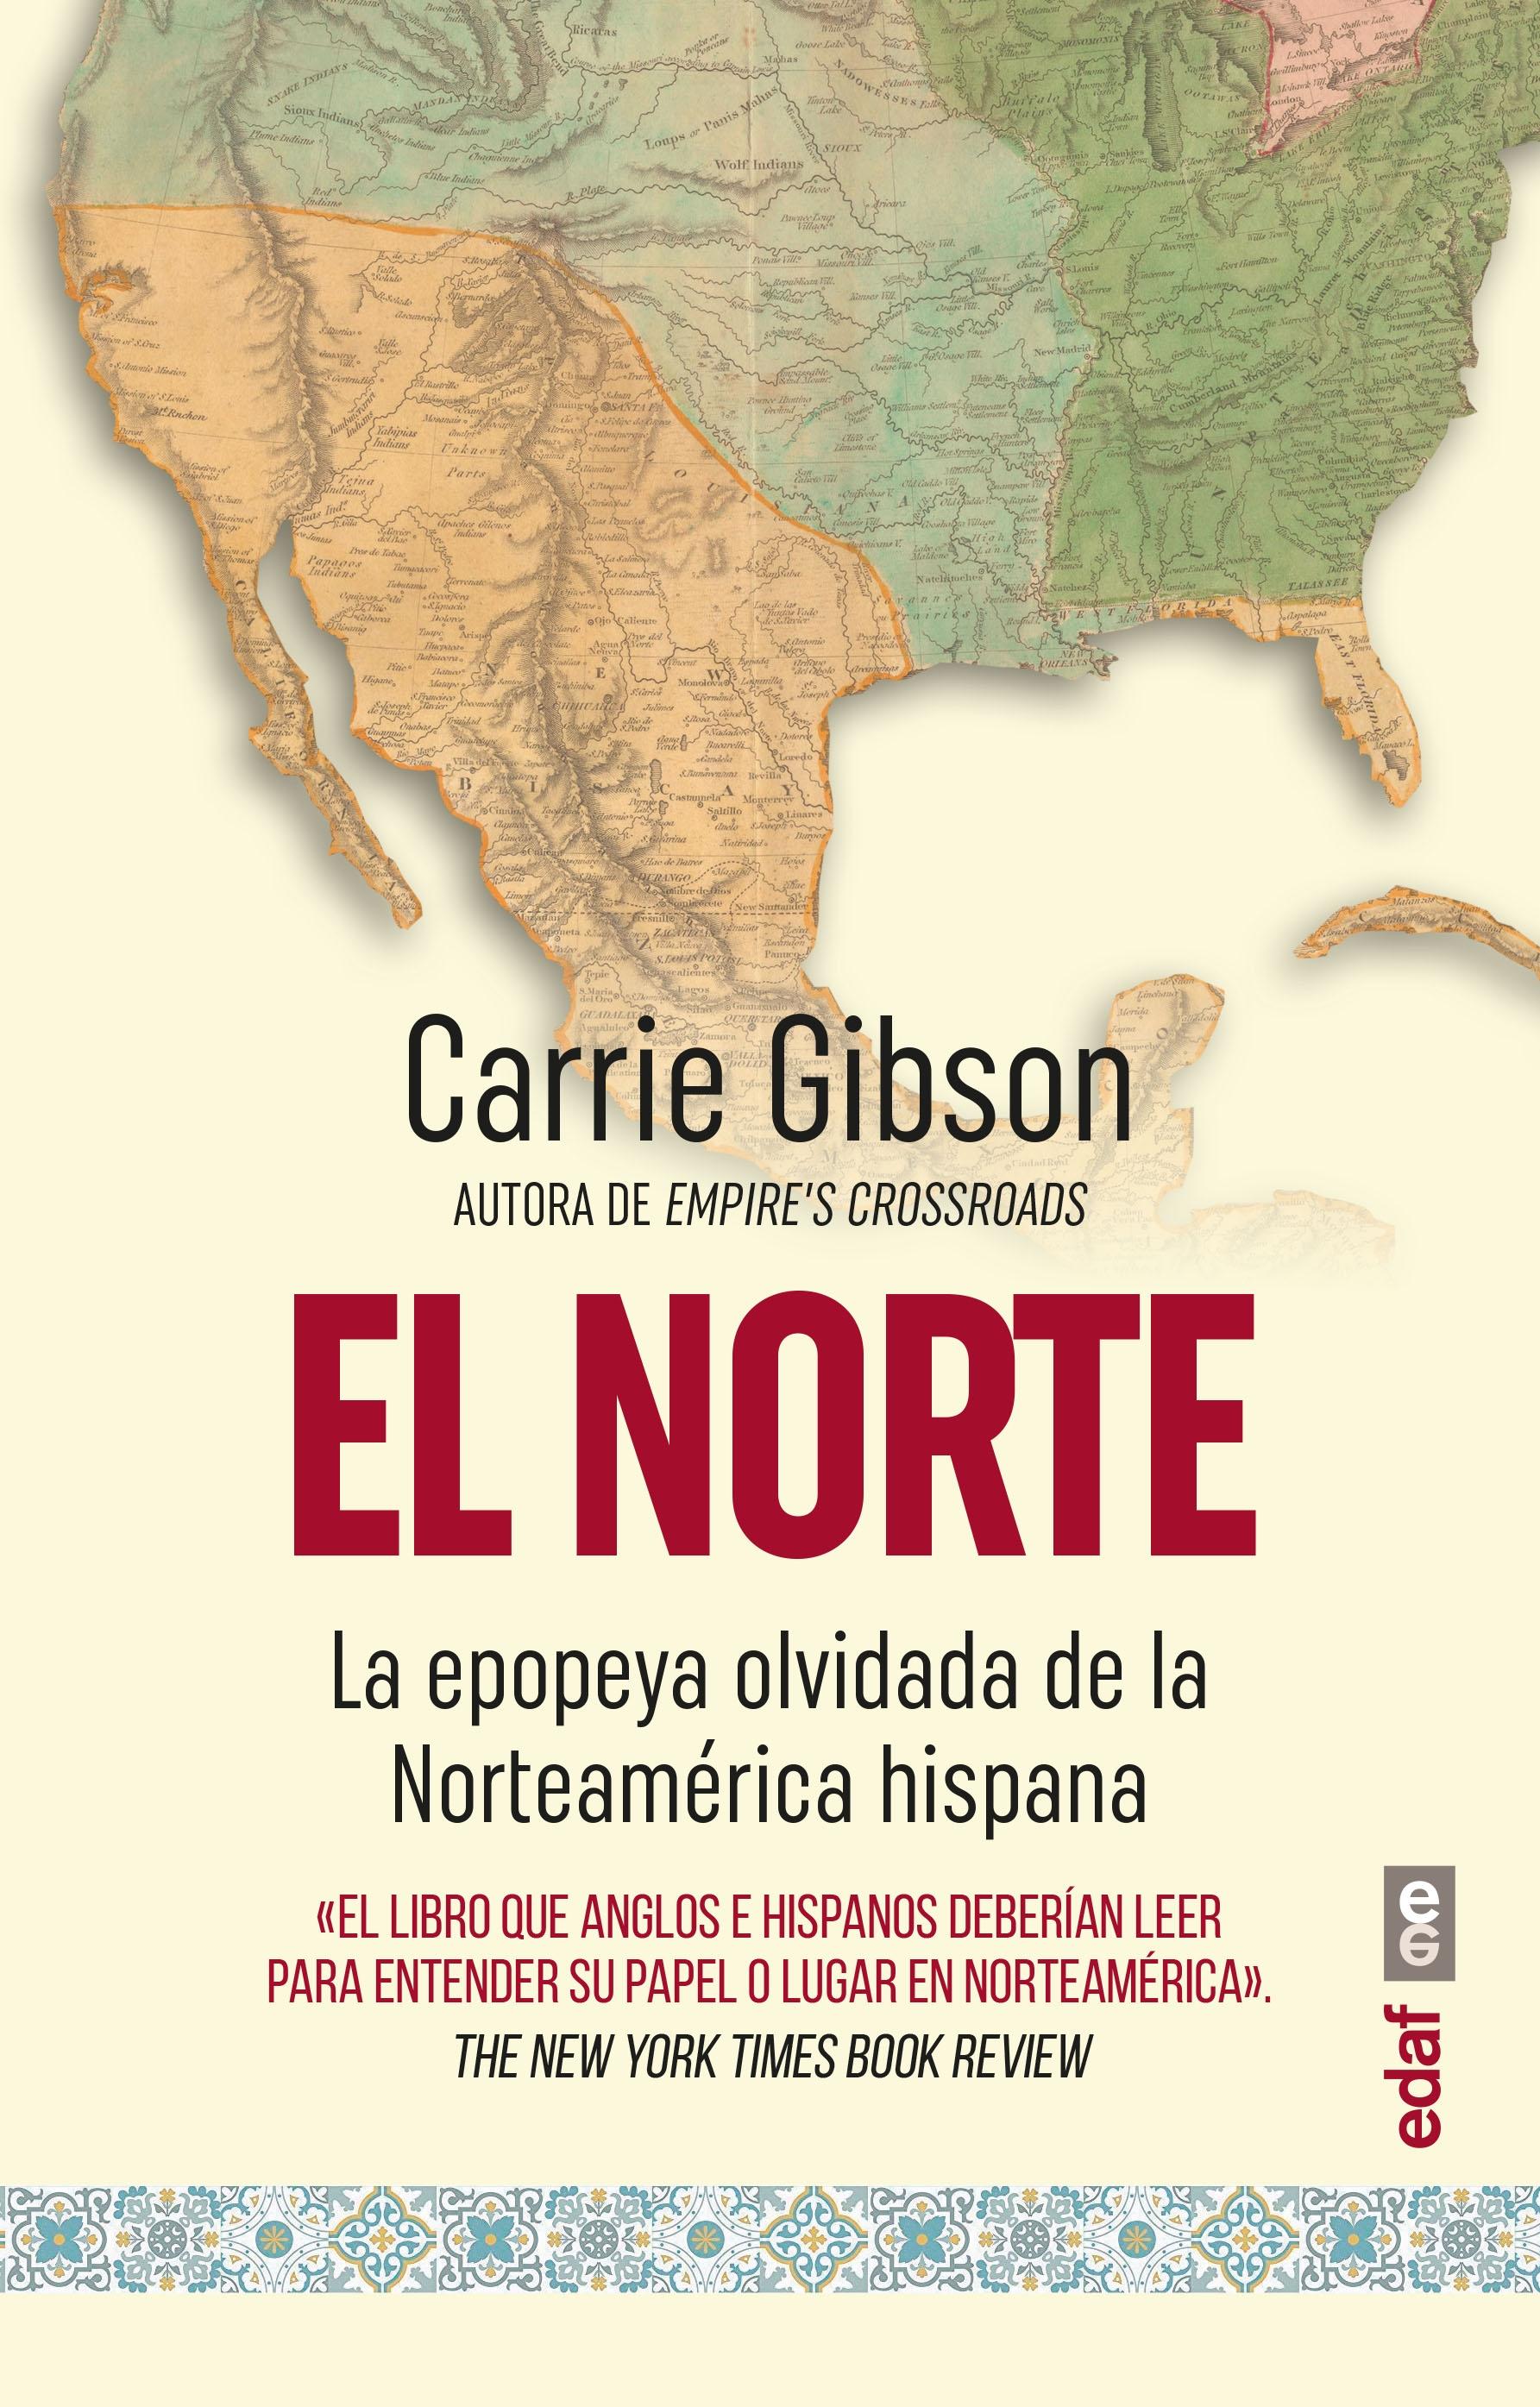 El Norte "La Epopeya Olvidada de la Norteamérica Hispana"